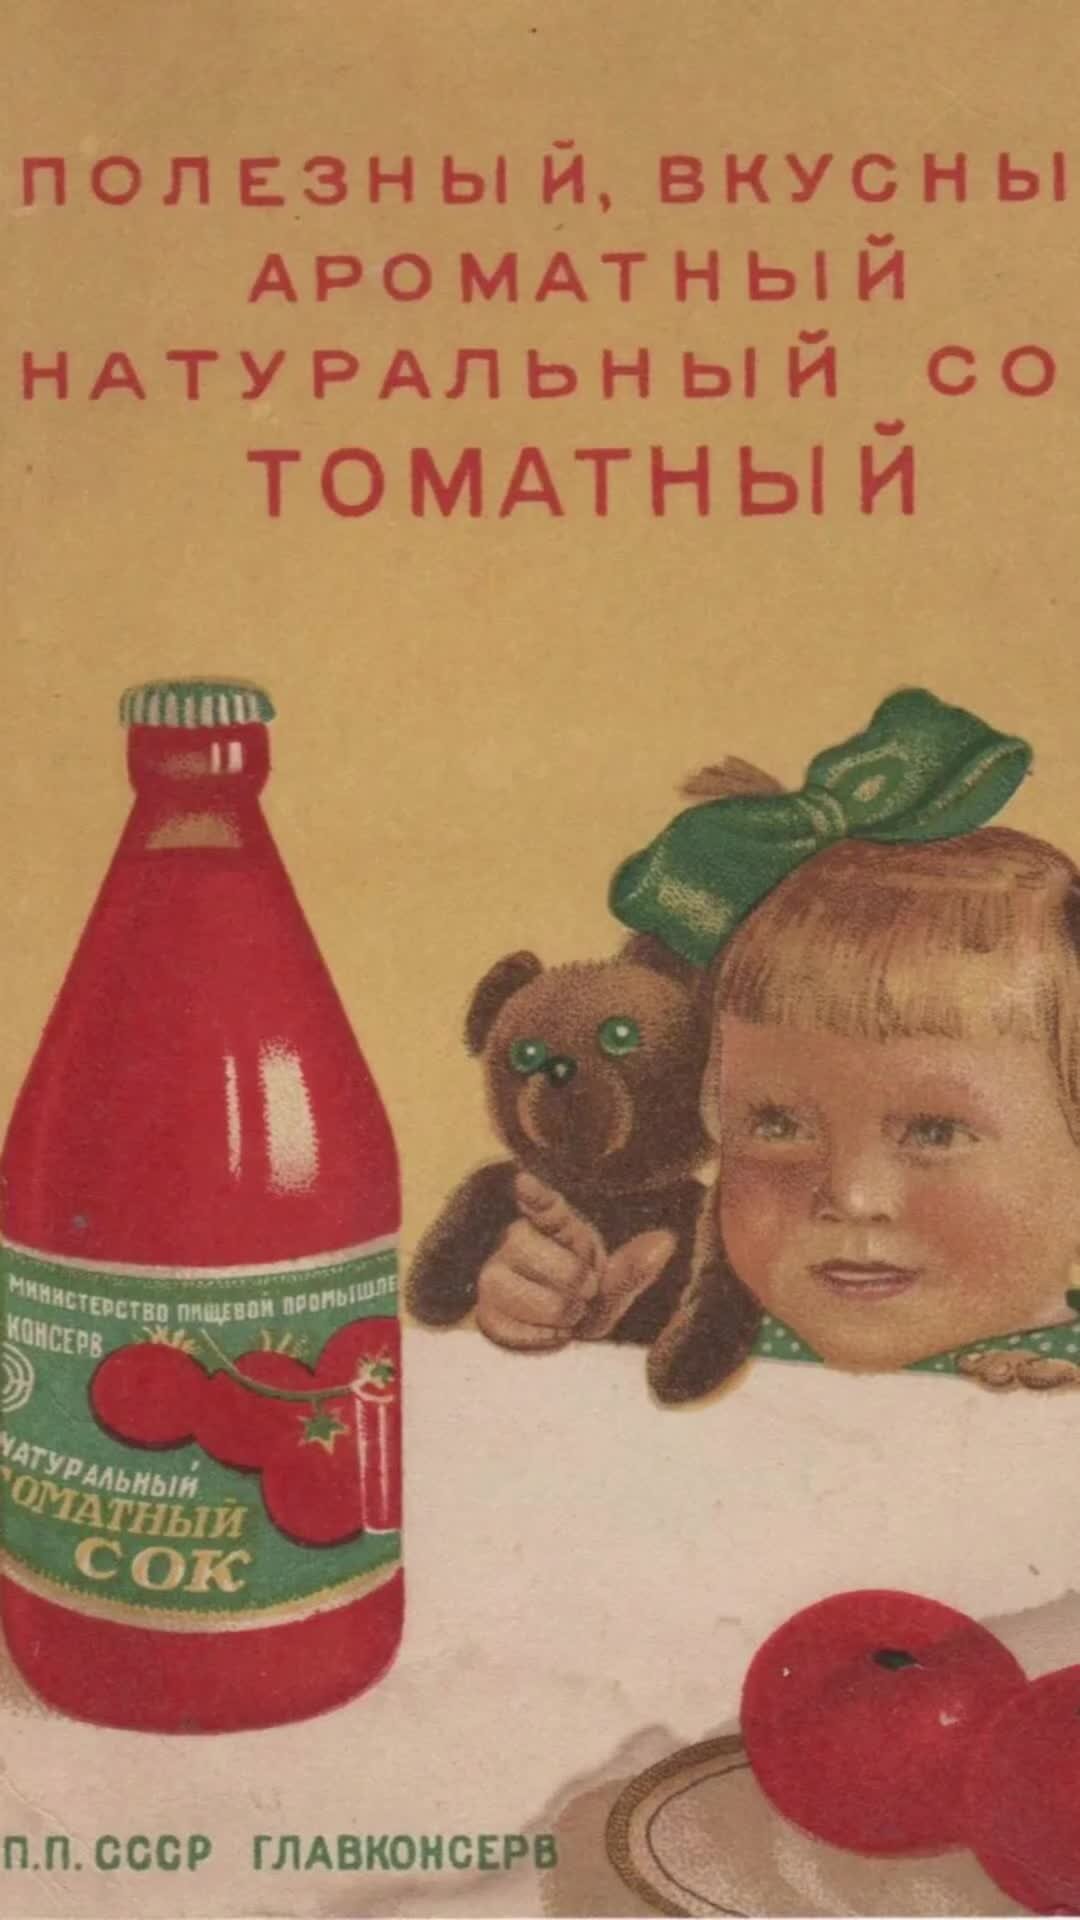 Вода вода томатный сок вода вода. Реклама СССР пейте томатный сок. Советские рекламные плакаты. Советская реклама томатного сока. Советская реклама продуктов.